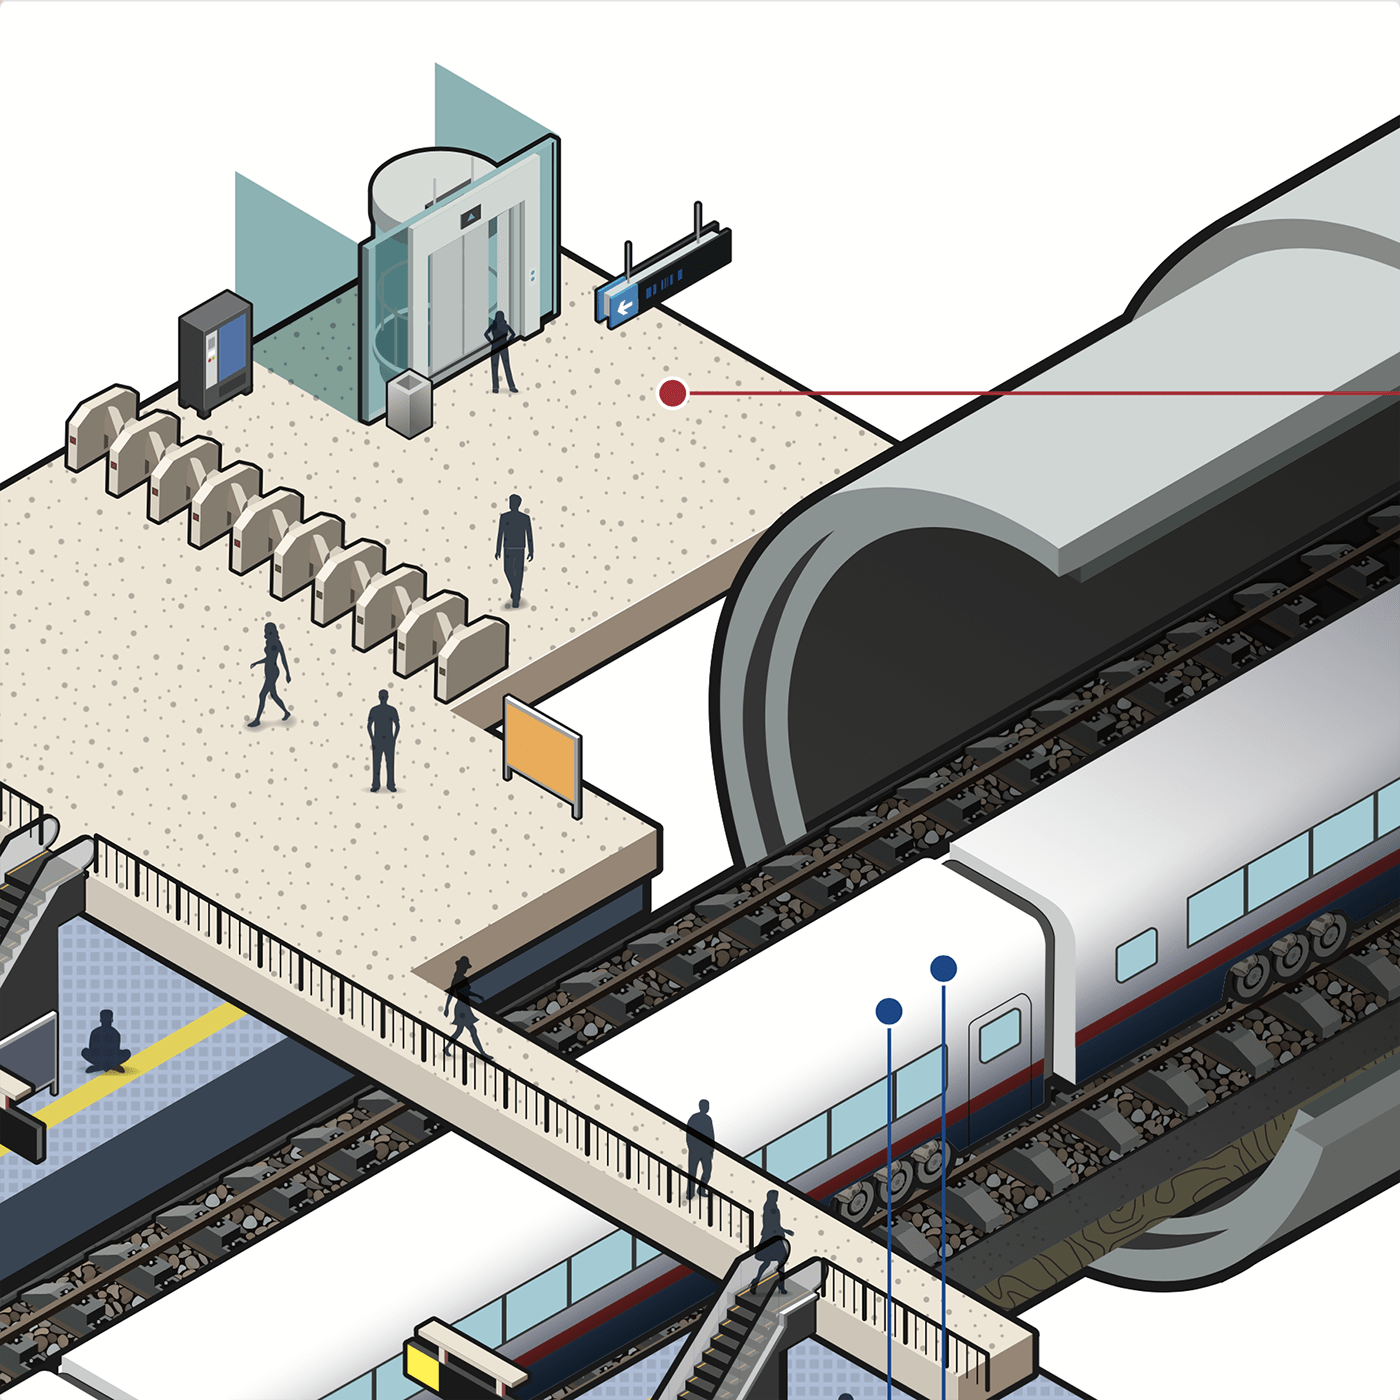 HIGHSPEEDRAIL highspeedtrain isometric illustration railwayposter Vector Illustration